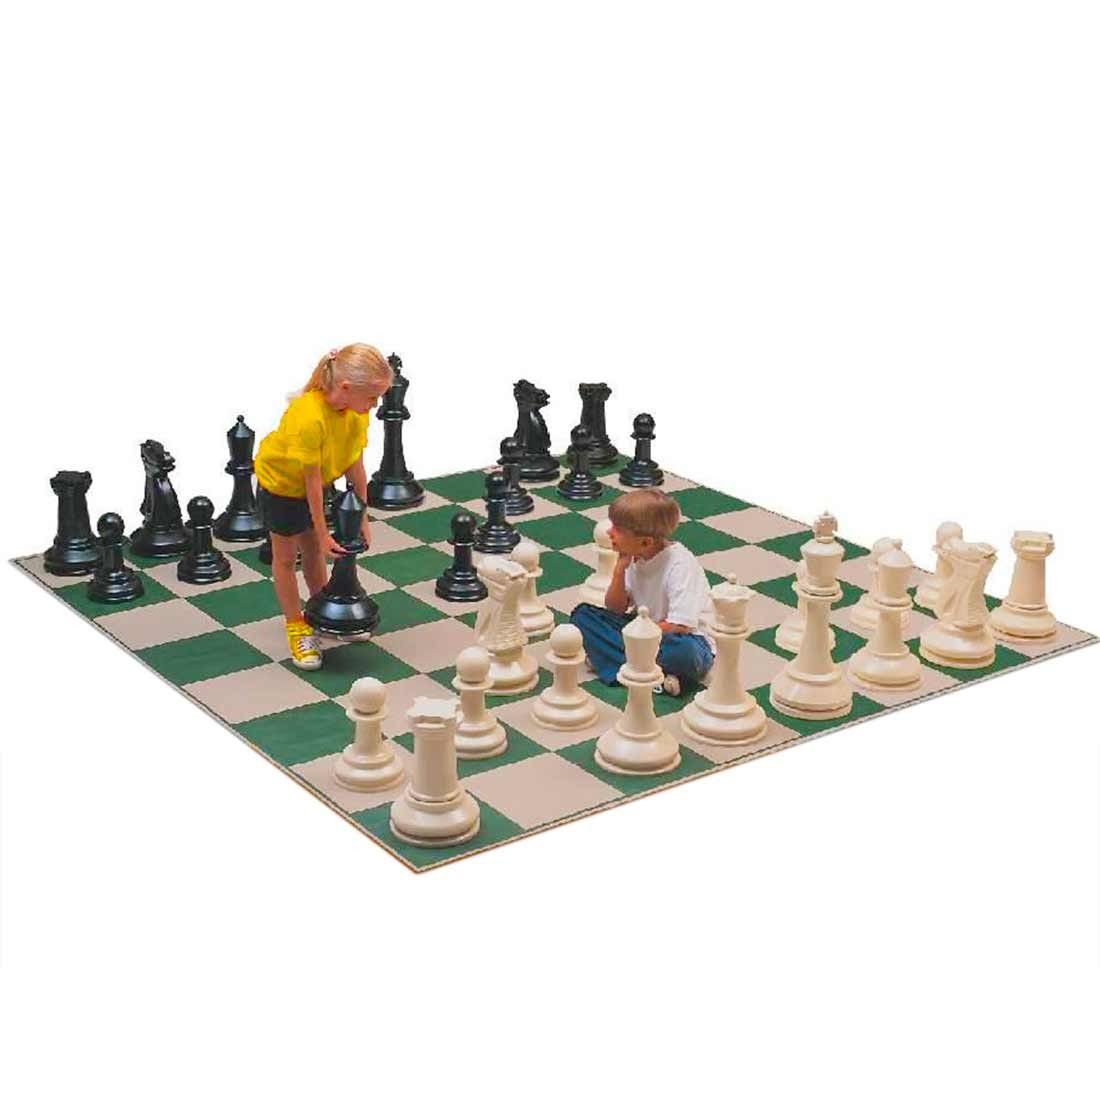 Xadrez gigante: uma forma divertida de jogar – Caminhos do Xadrez